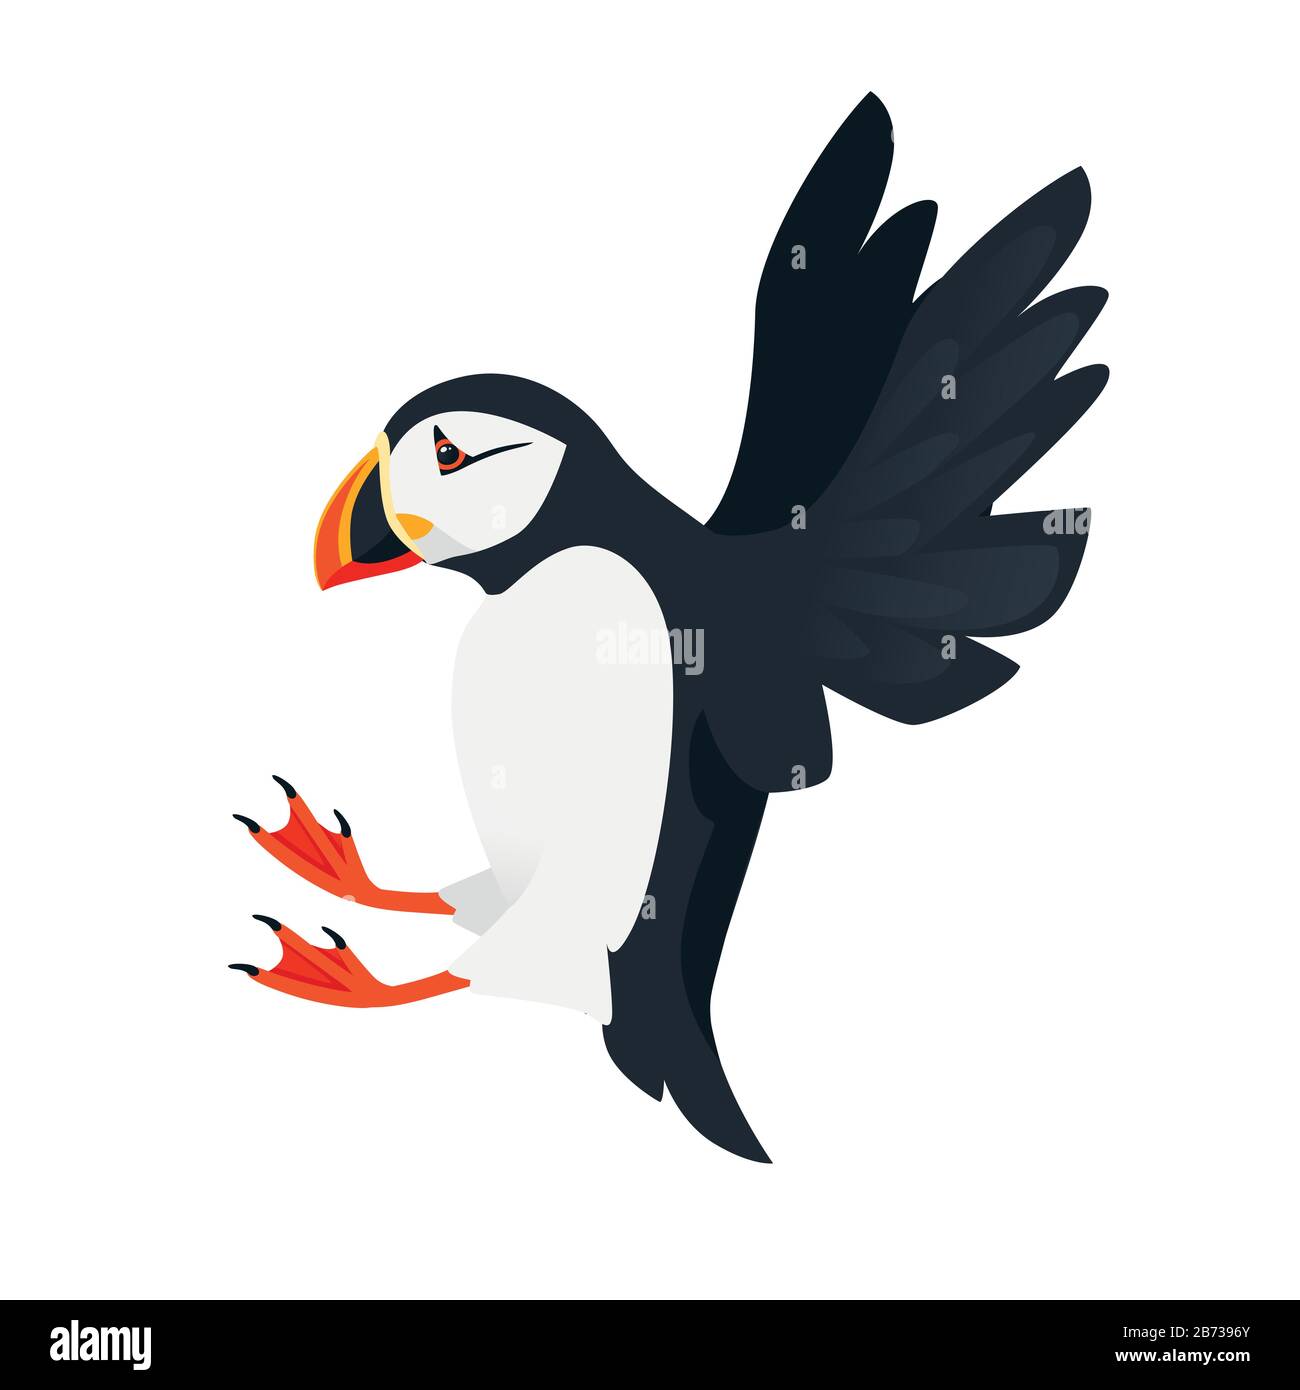 Motif animal de caricature des oiseaux de la carne de l'atlantique volante illustration vectorielle plate isolée sur fond blanc. Illustration de Vecteur